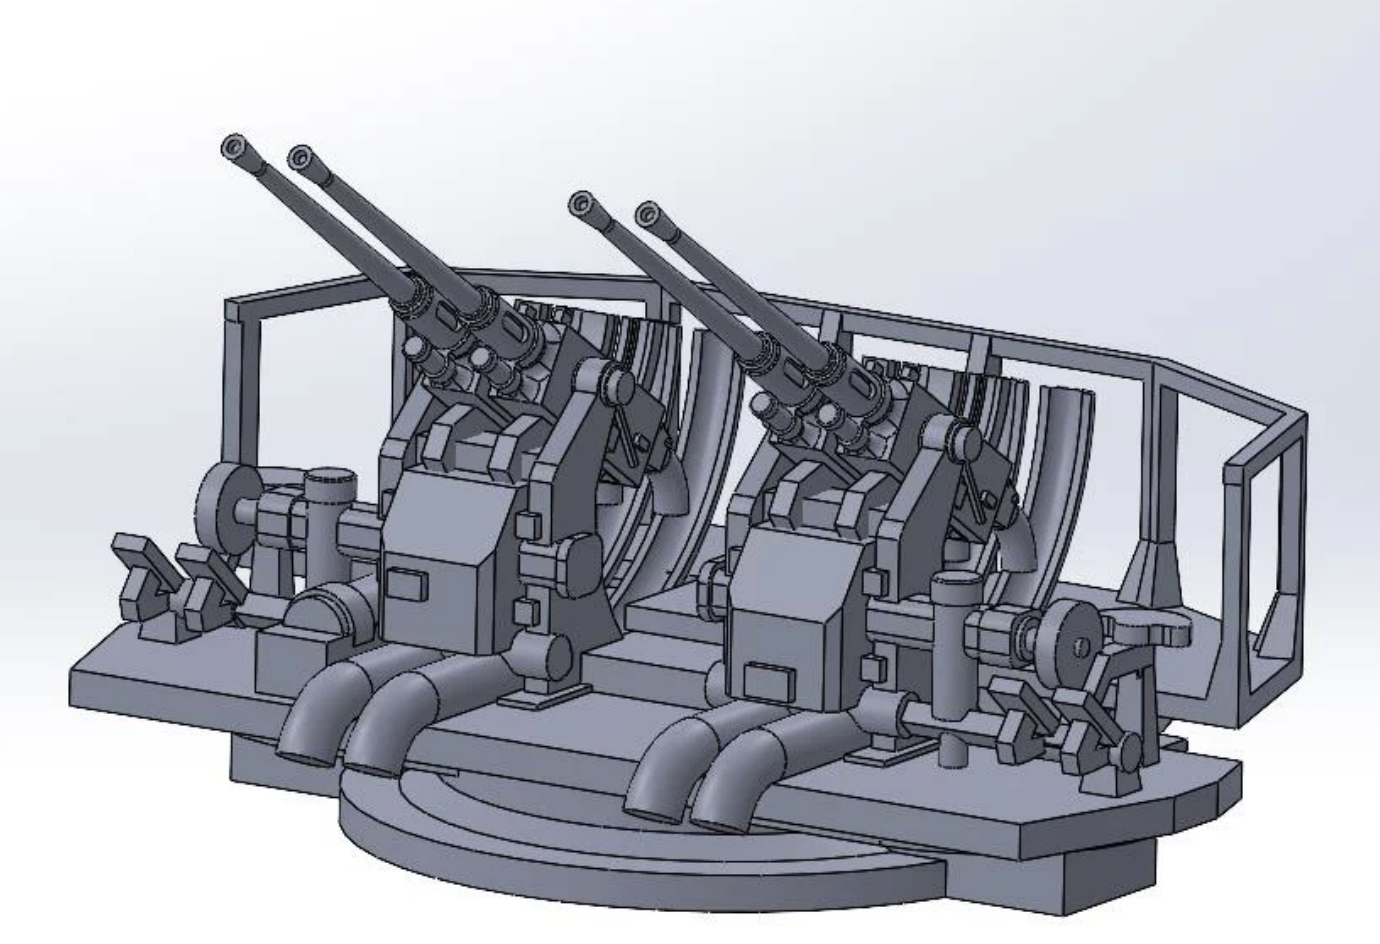 Bofors 40 mm L/60 Gun Set, 1:350